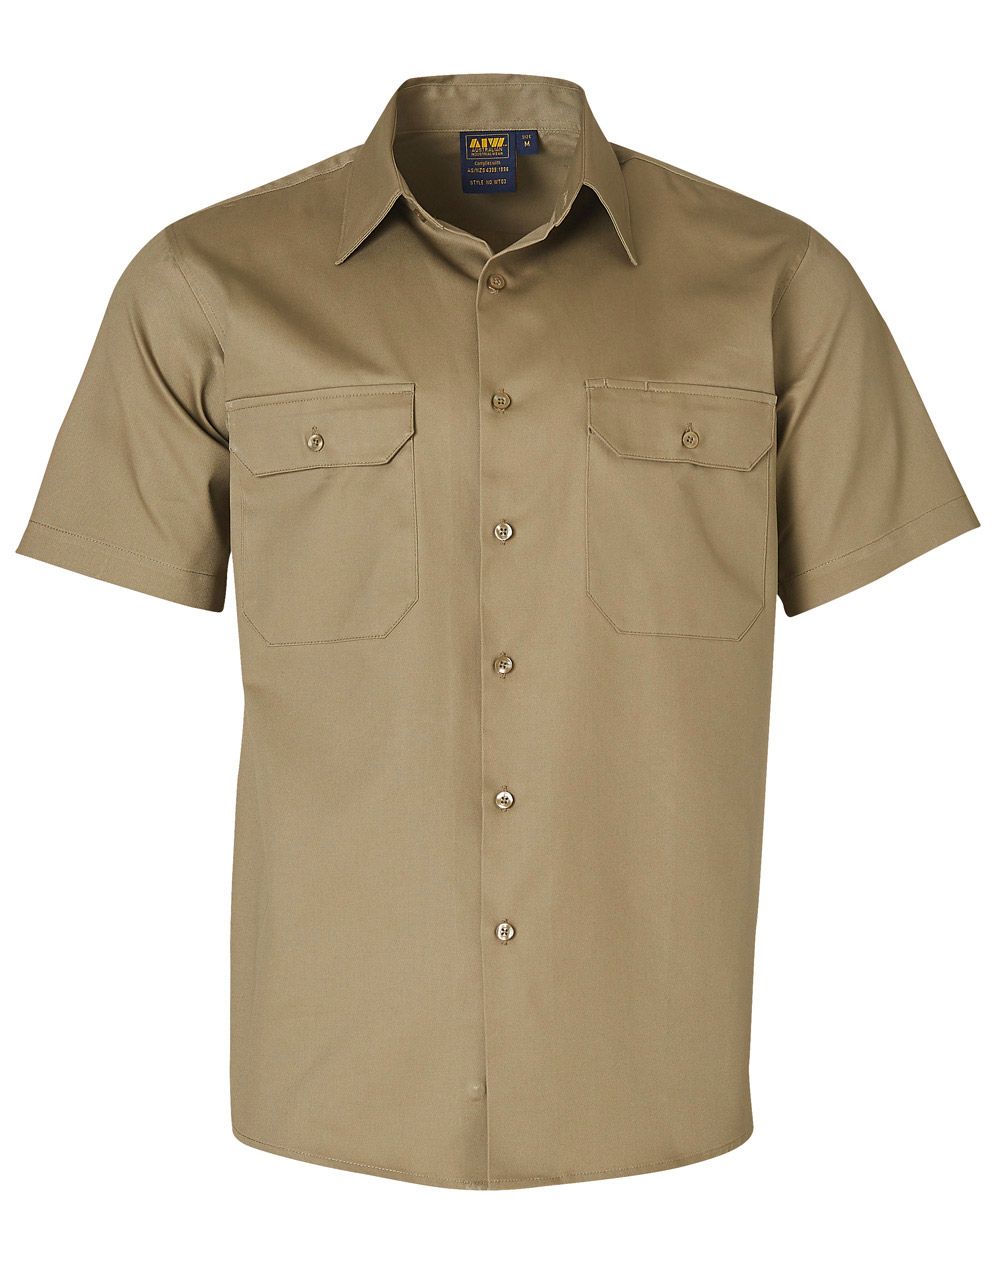 WT03 Cotton Drill Short Sleeve Work Shirt